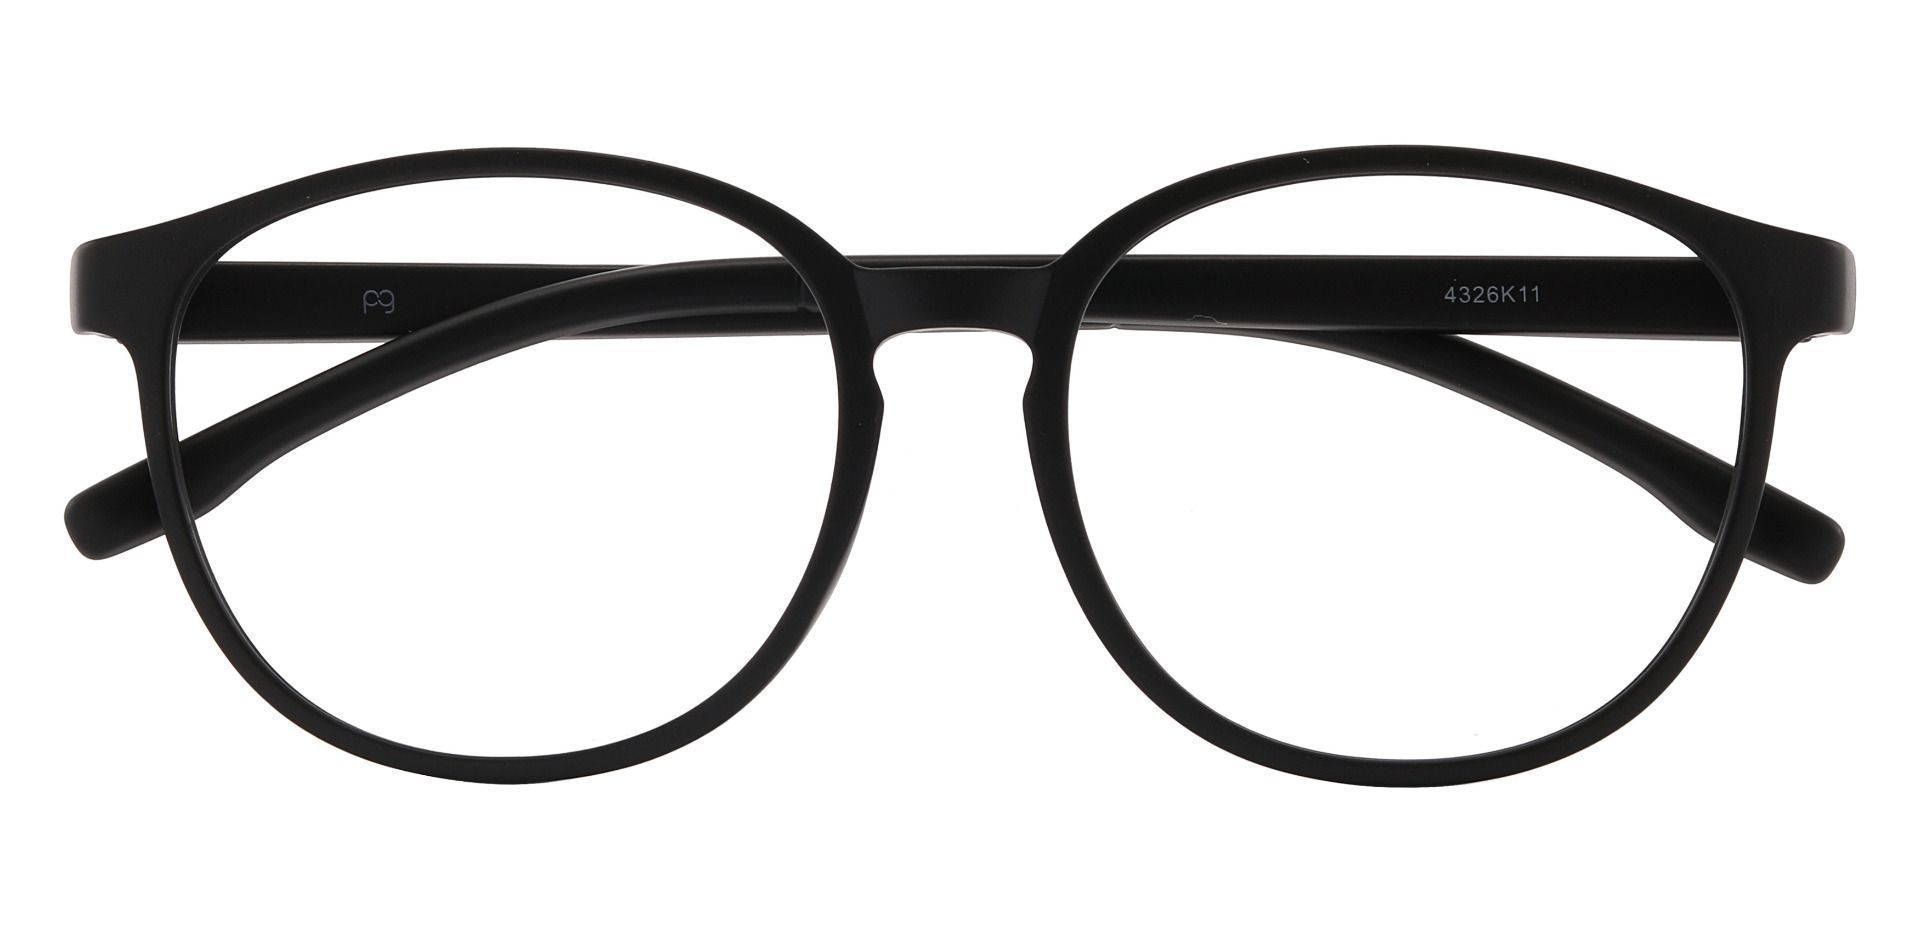 Molasses Oval Progressive Glasses - Black